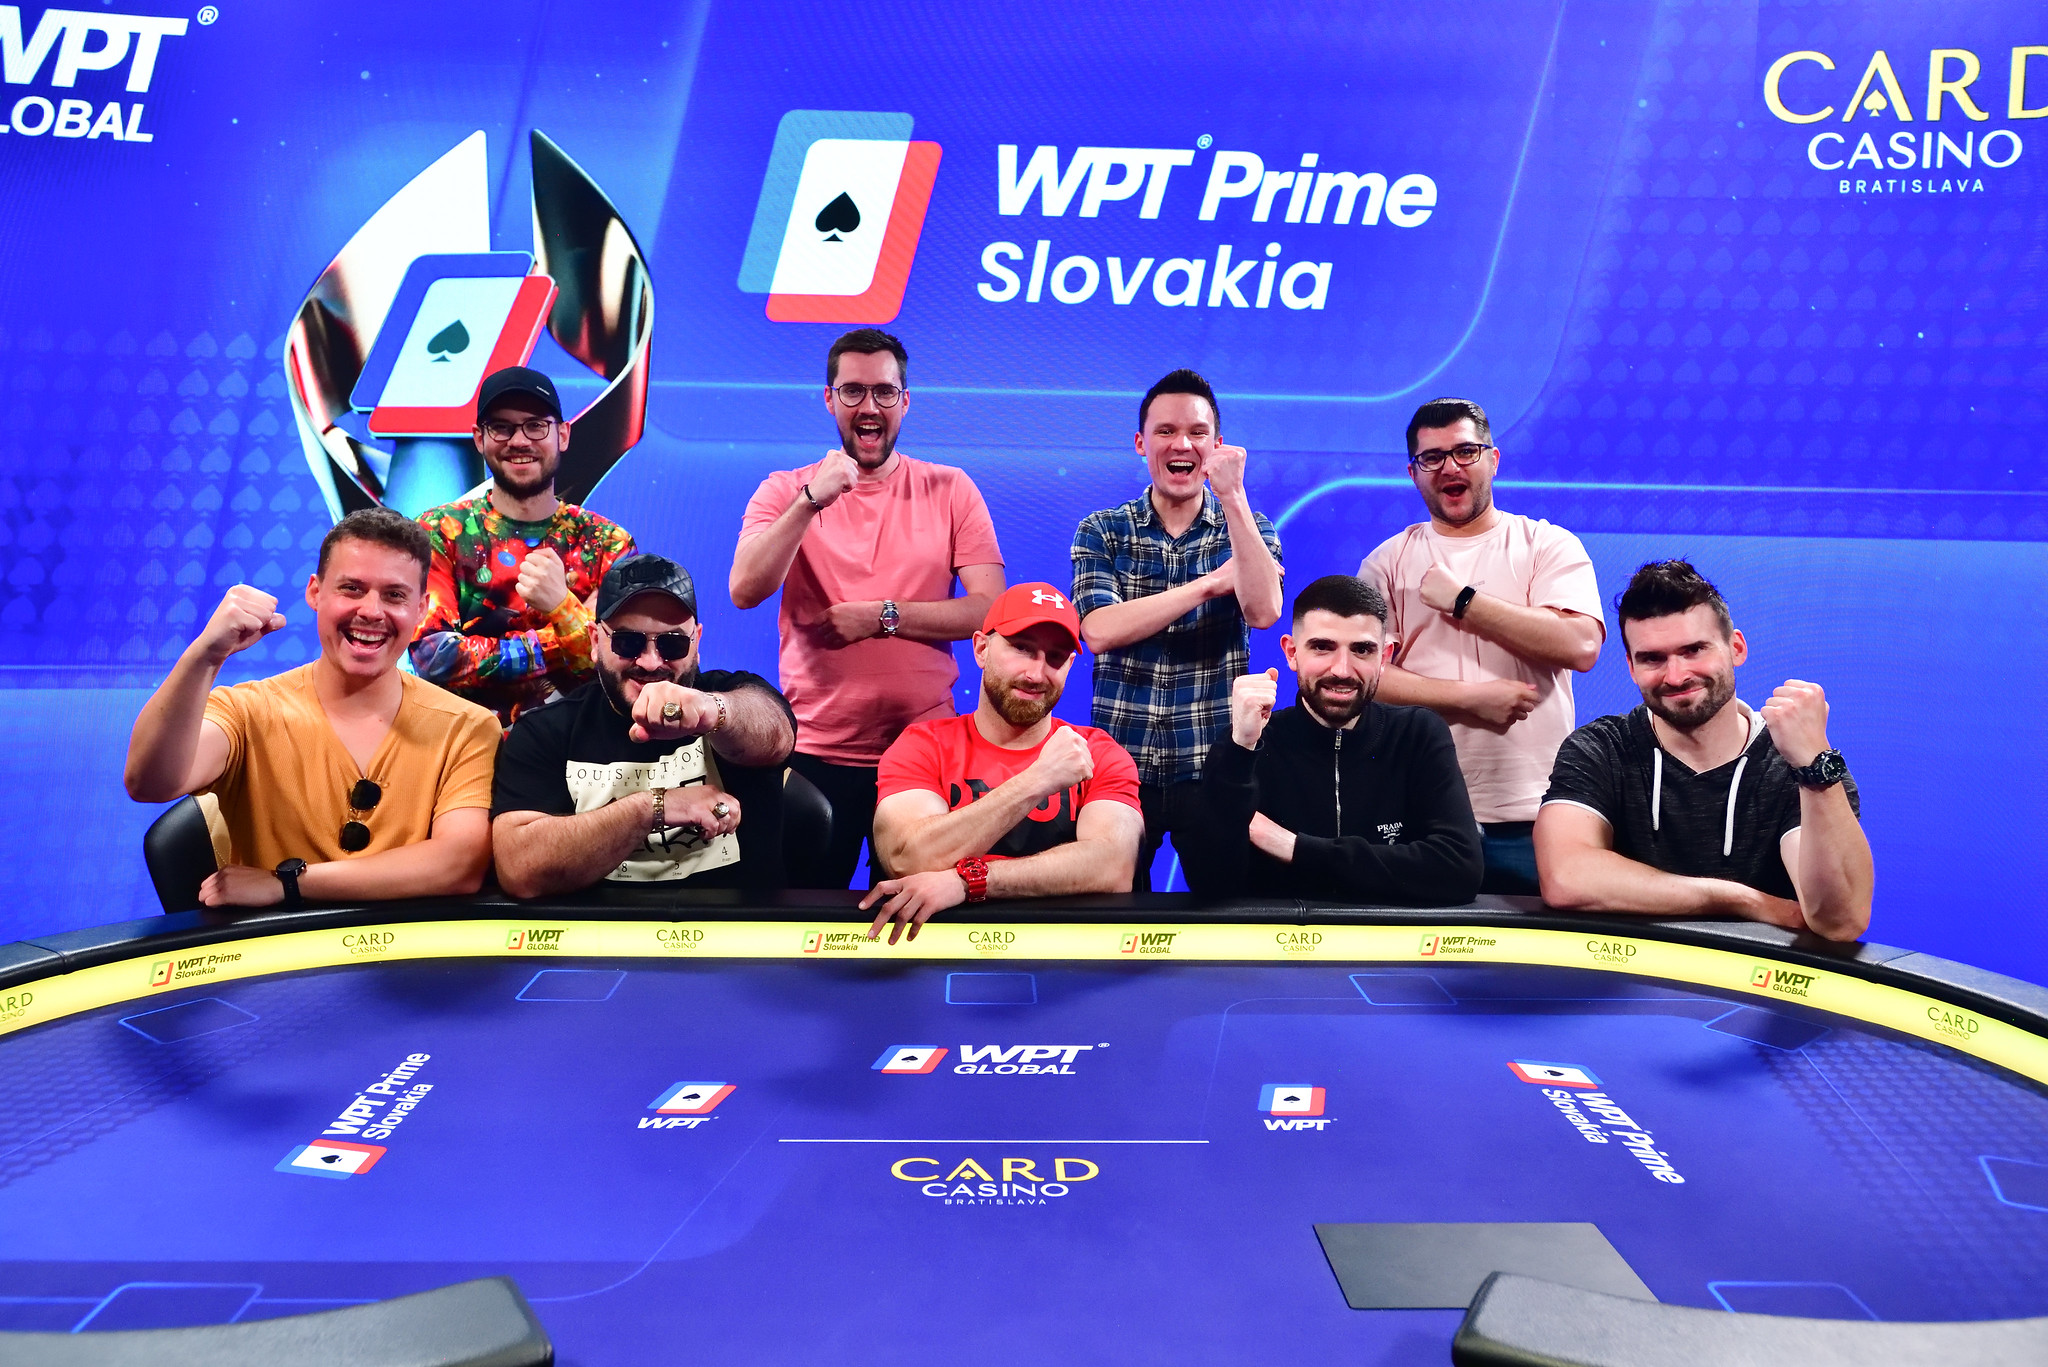 WPT Prime Slovakia zná své finalisty, kdo si dnes odnese 108.210€?